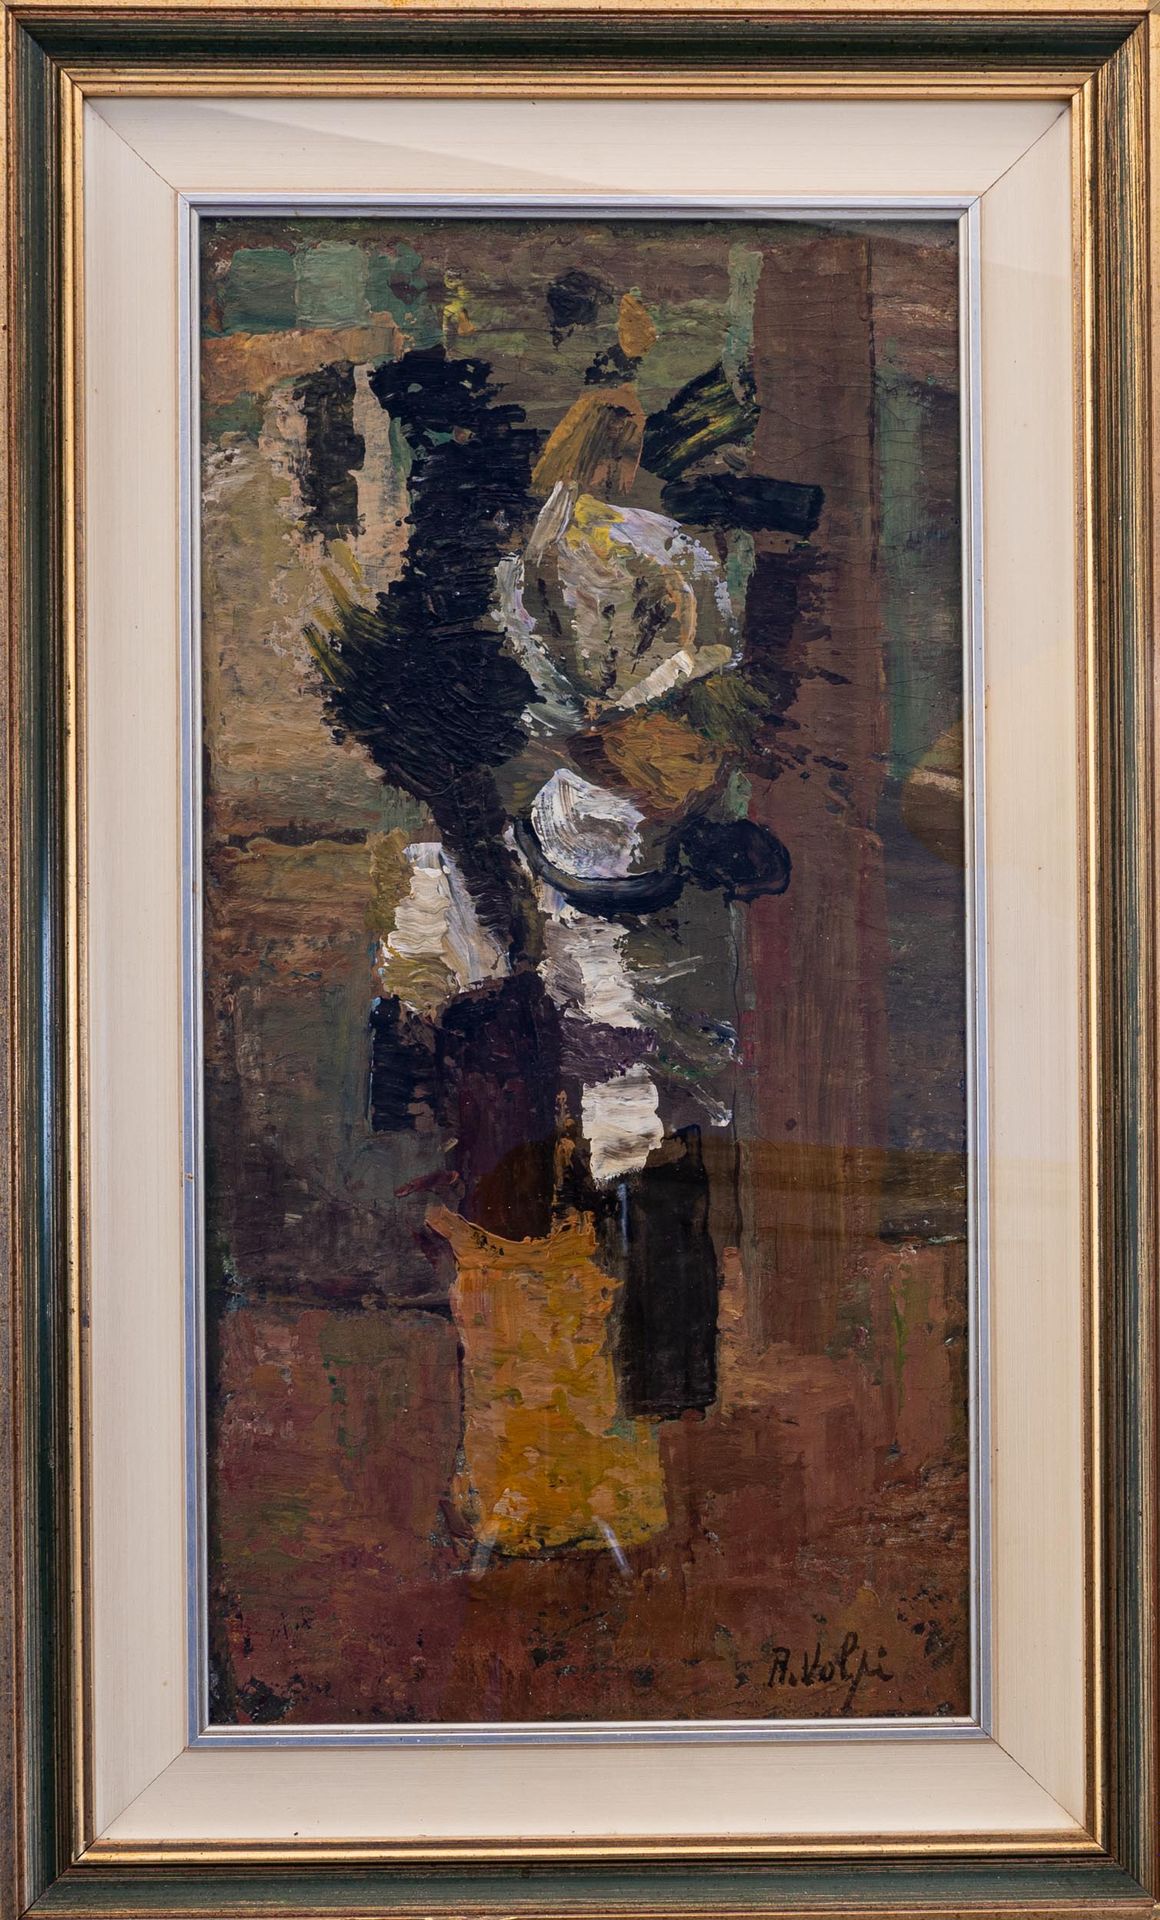 ALESSANDRO VOLPI (Pisa 1909 - Pisa 1978) Still Life

oil on panel

cm 63x33